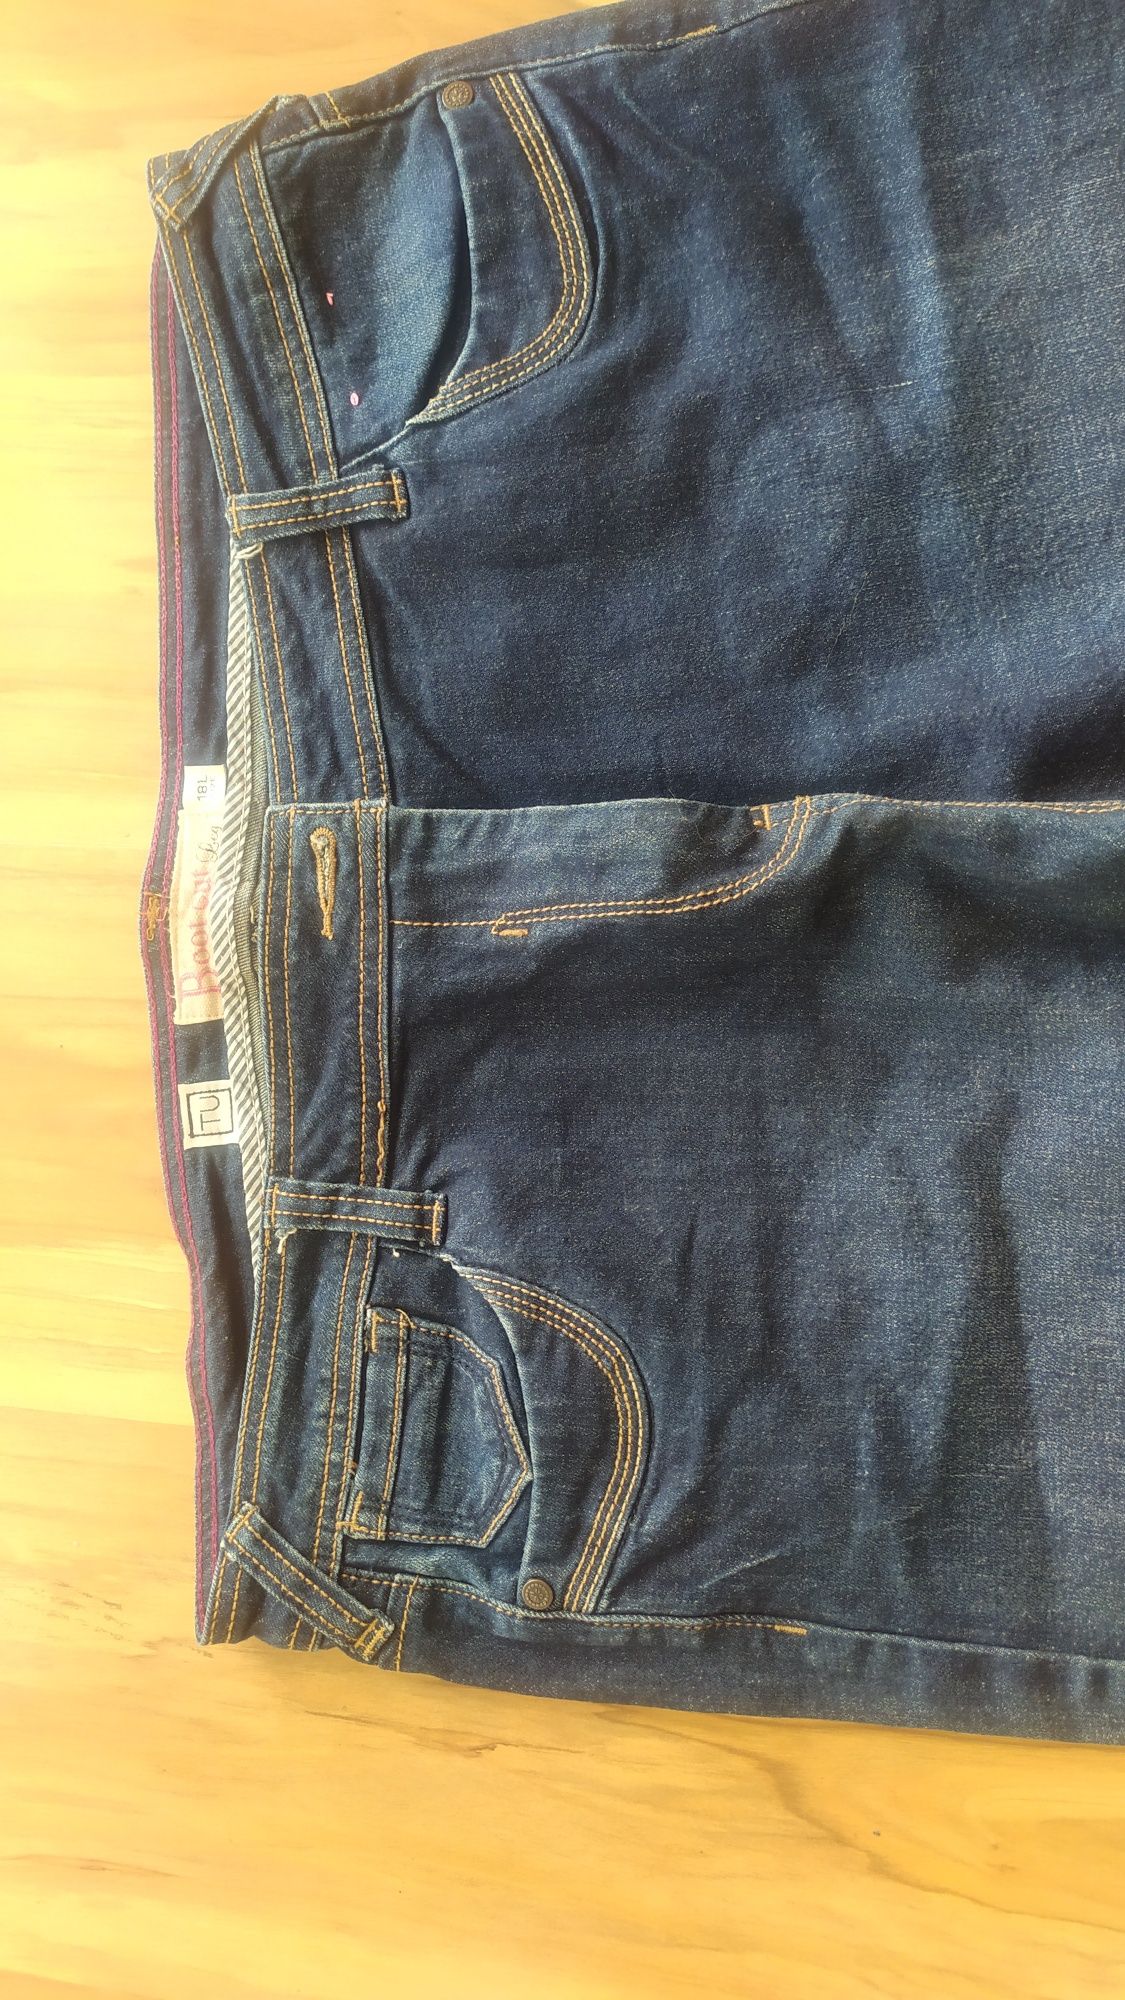 Spodnie damskie dżinsowe pas 100/ dł 115/biodra126